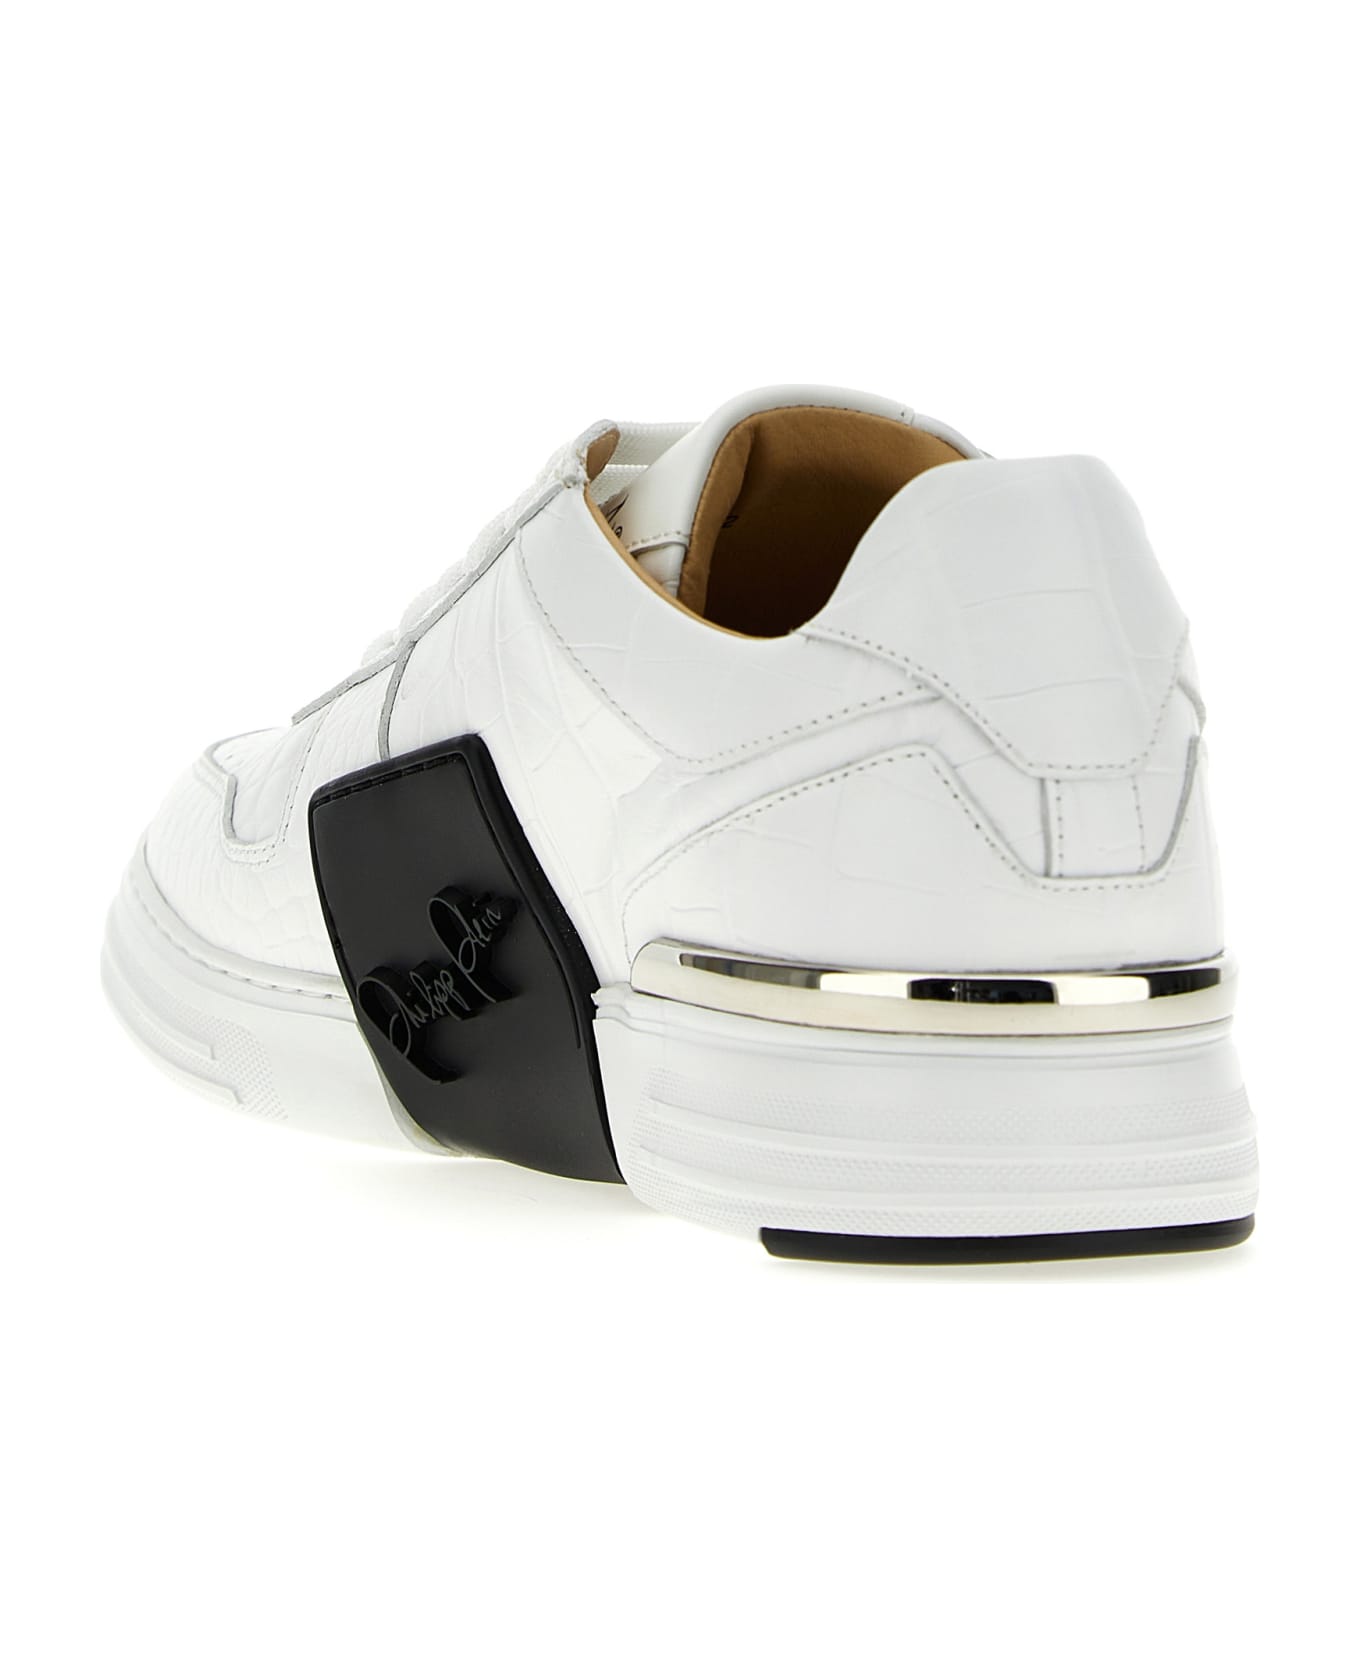 Philipp Plein 'hexagon' Sneakers - White/Black